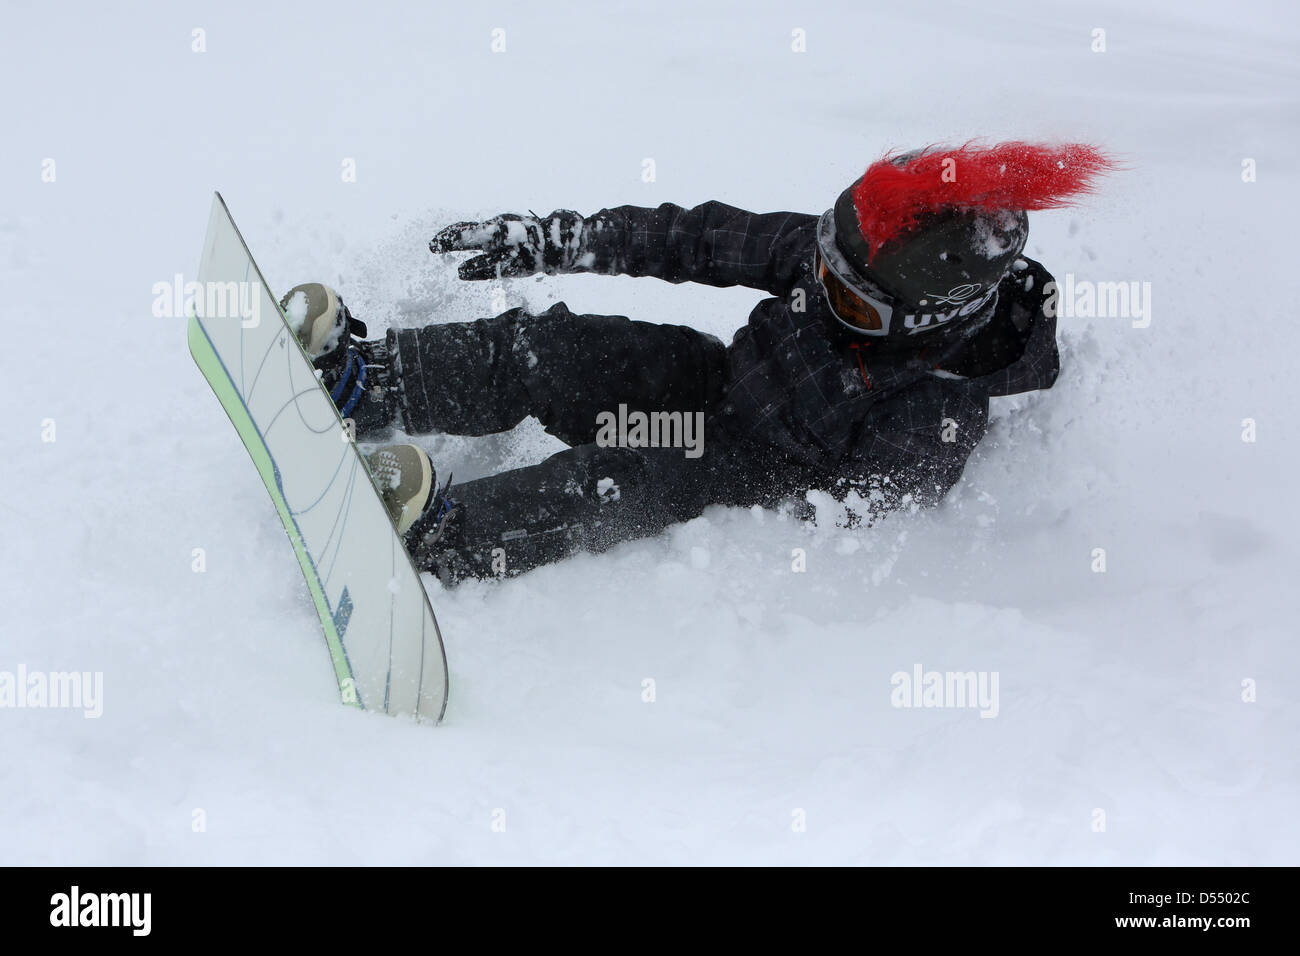 Krippenbrunn, l'Autriche, l'enfant se bloque alors que le snowboard Banque D'Images